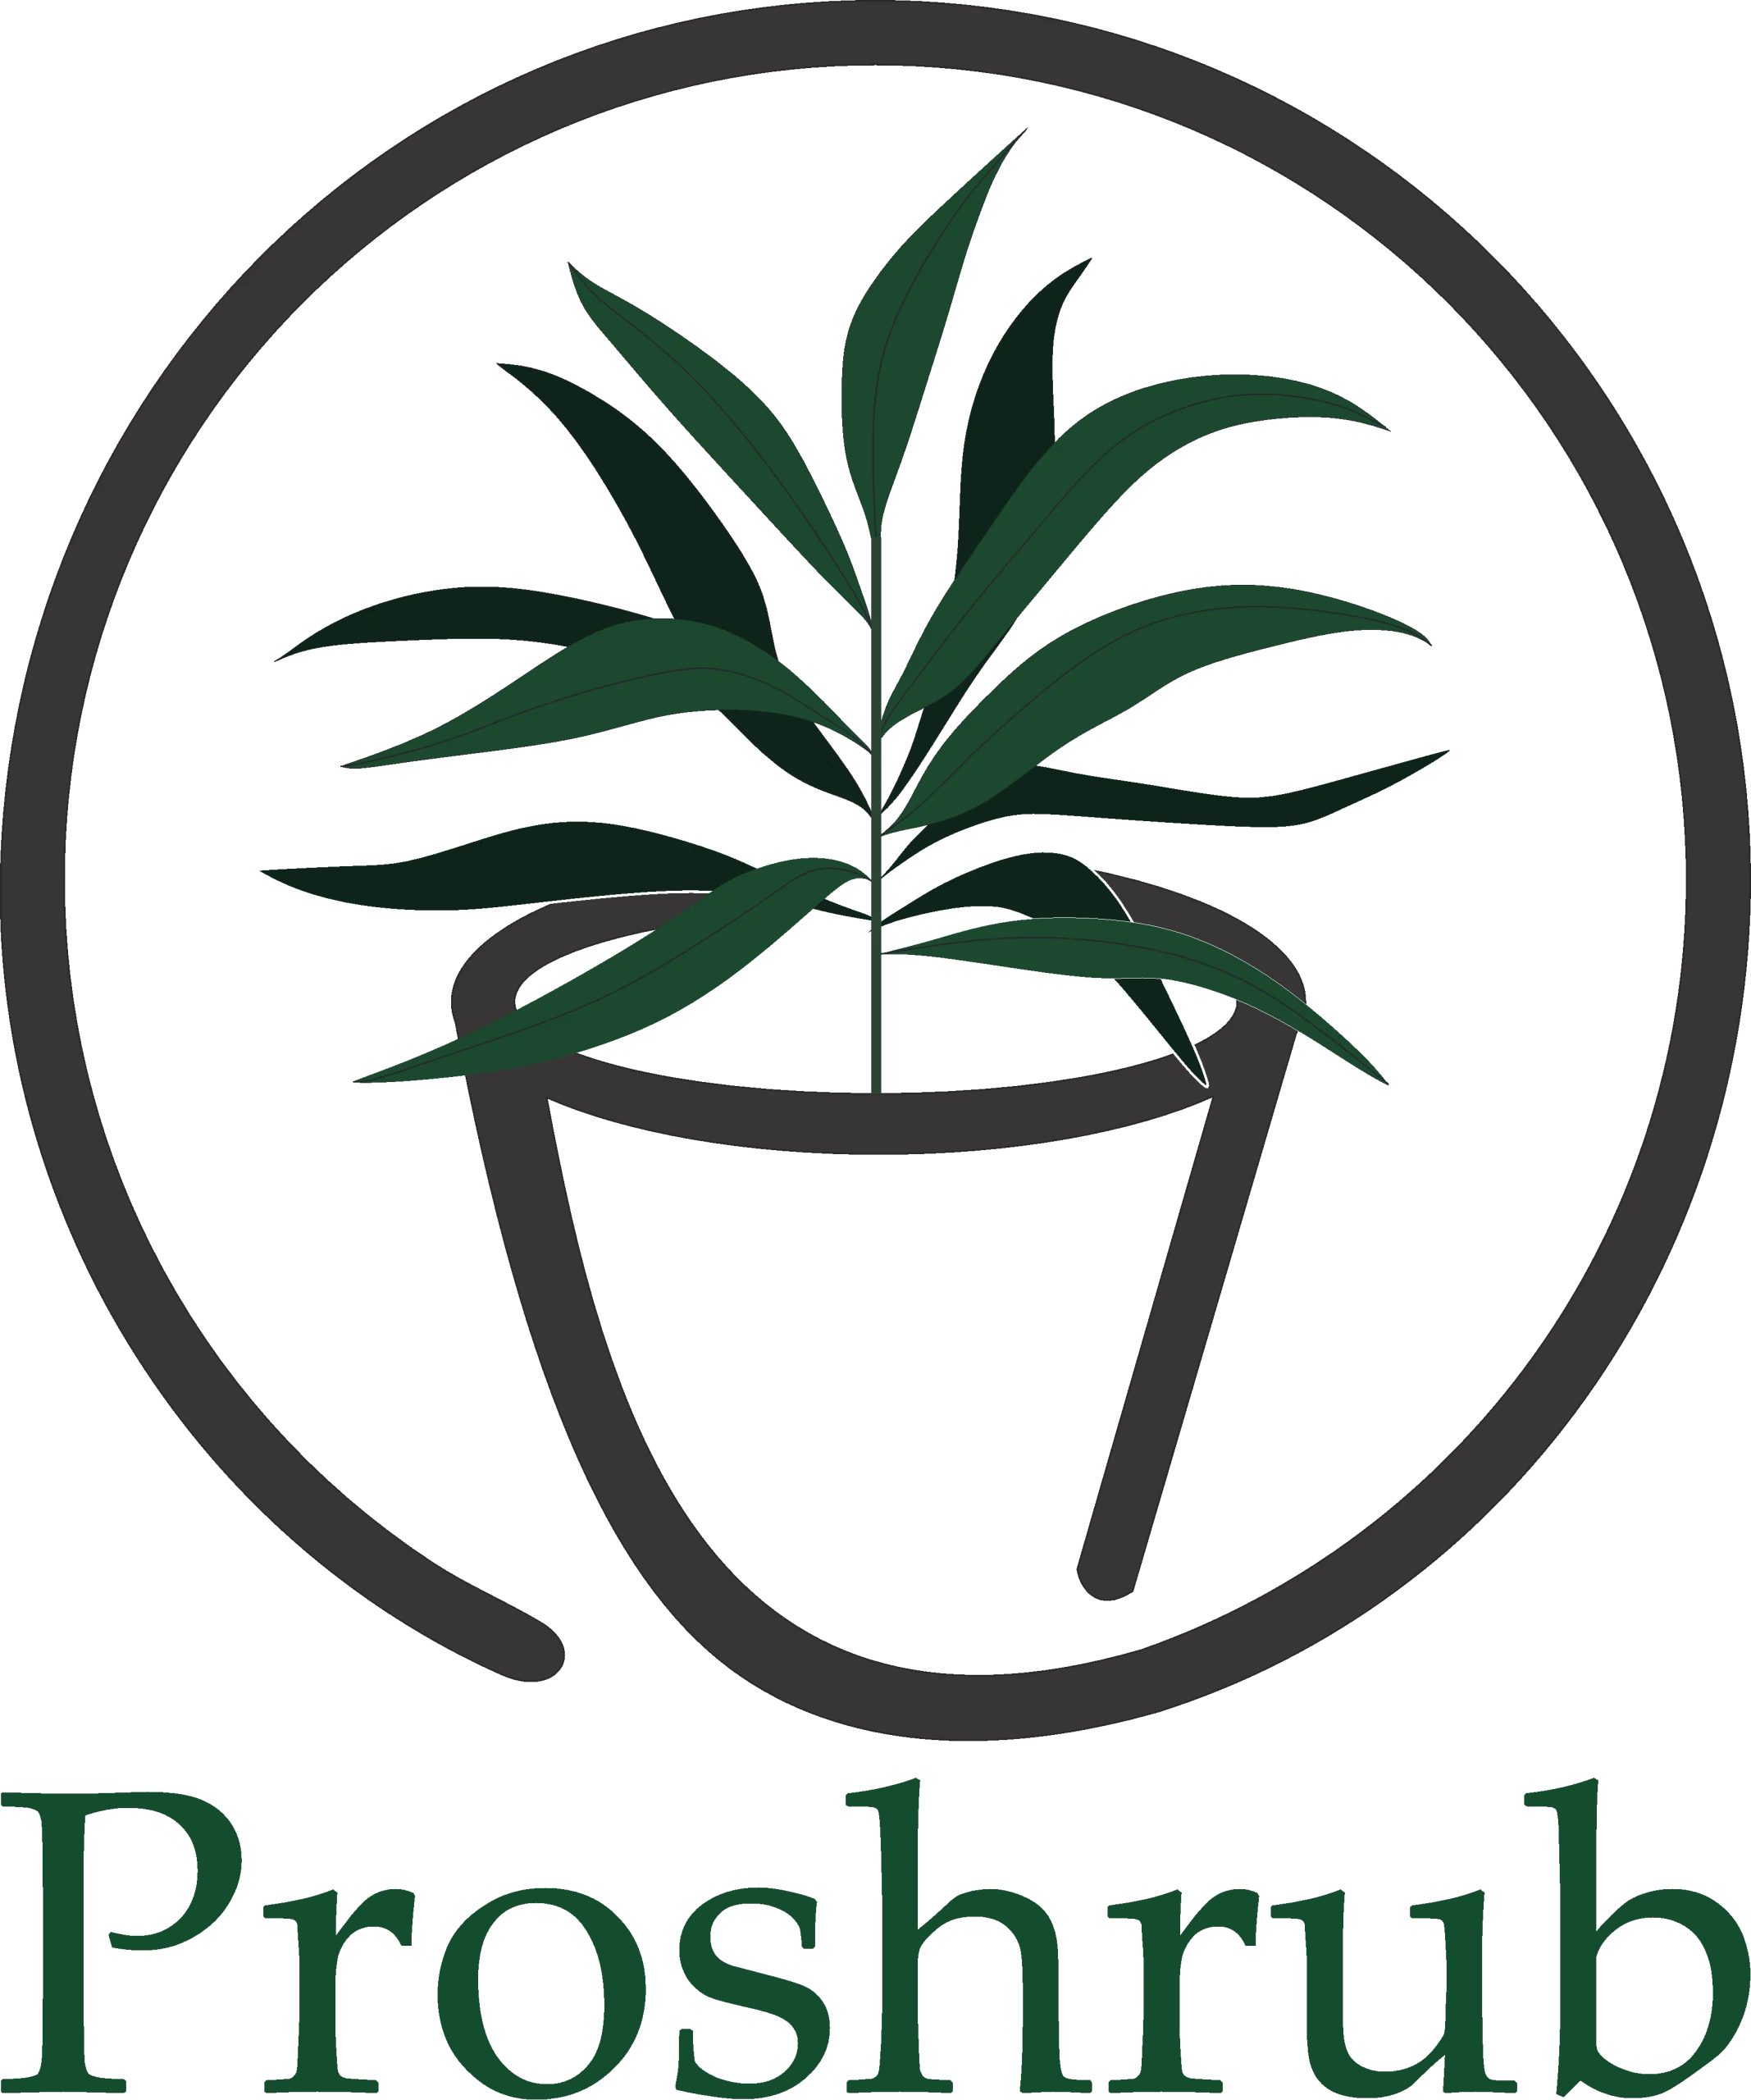 Proshrub